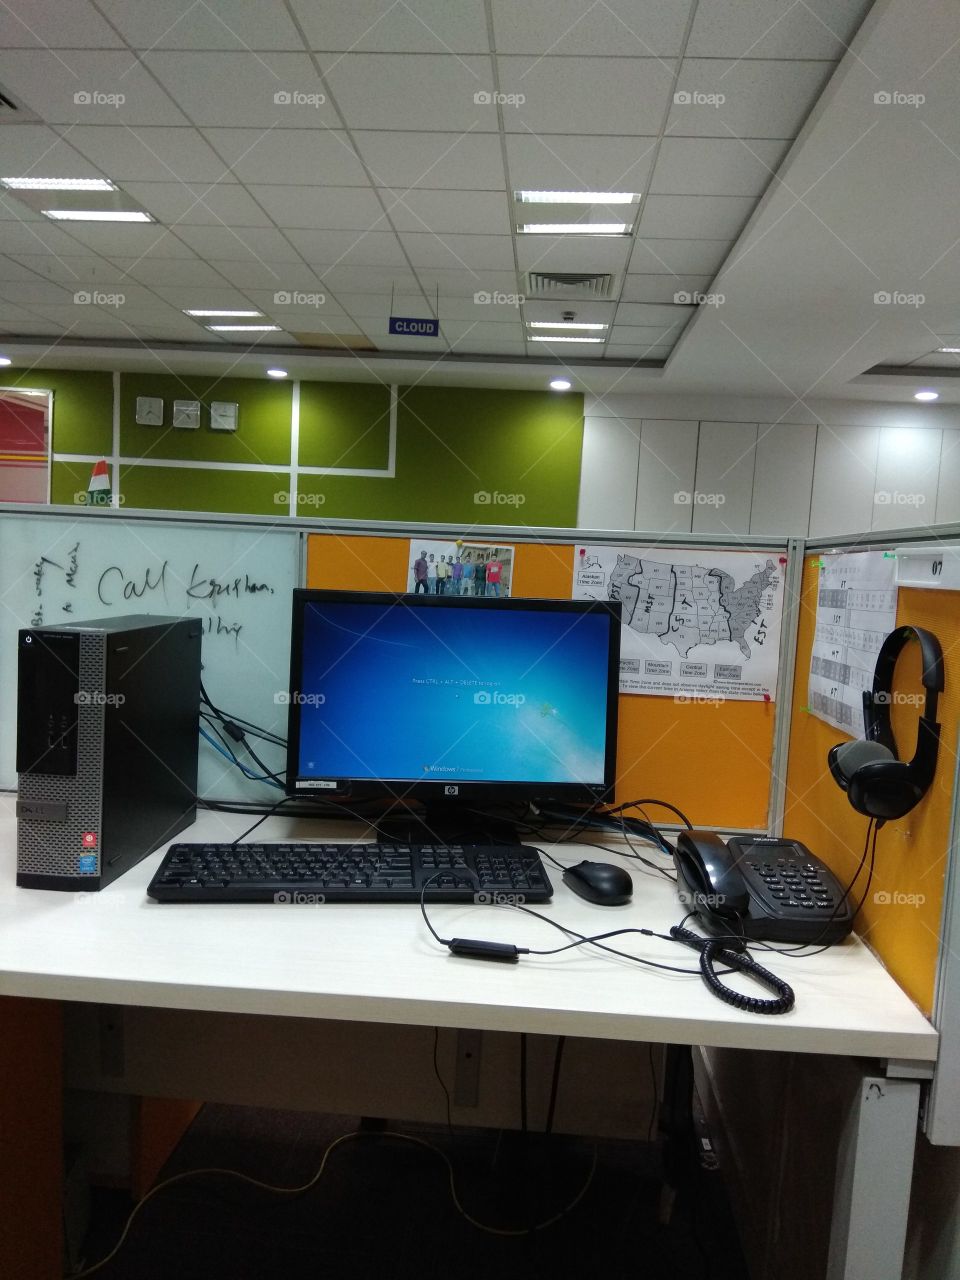 Work environment